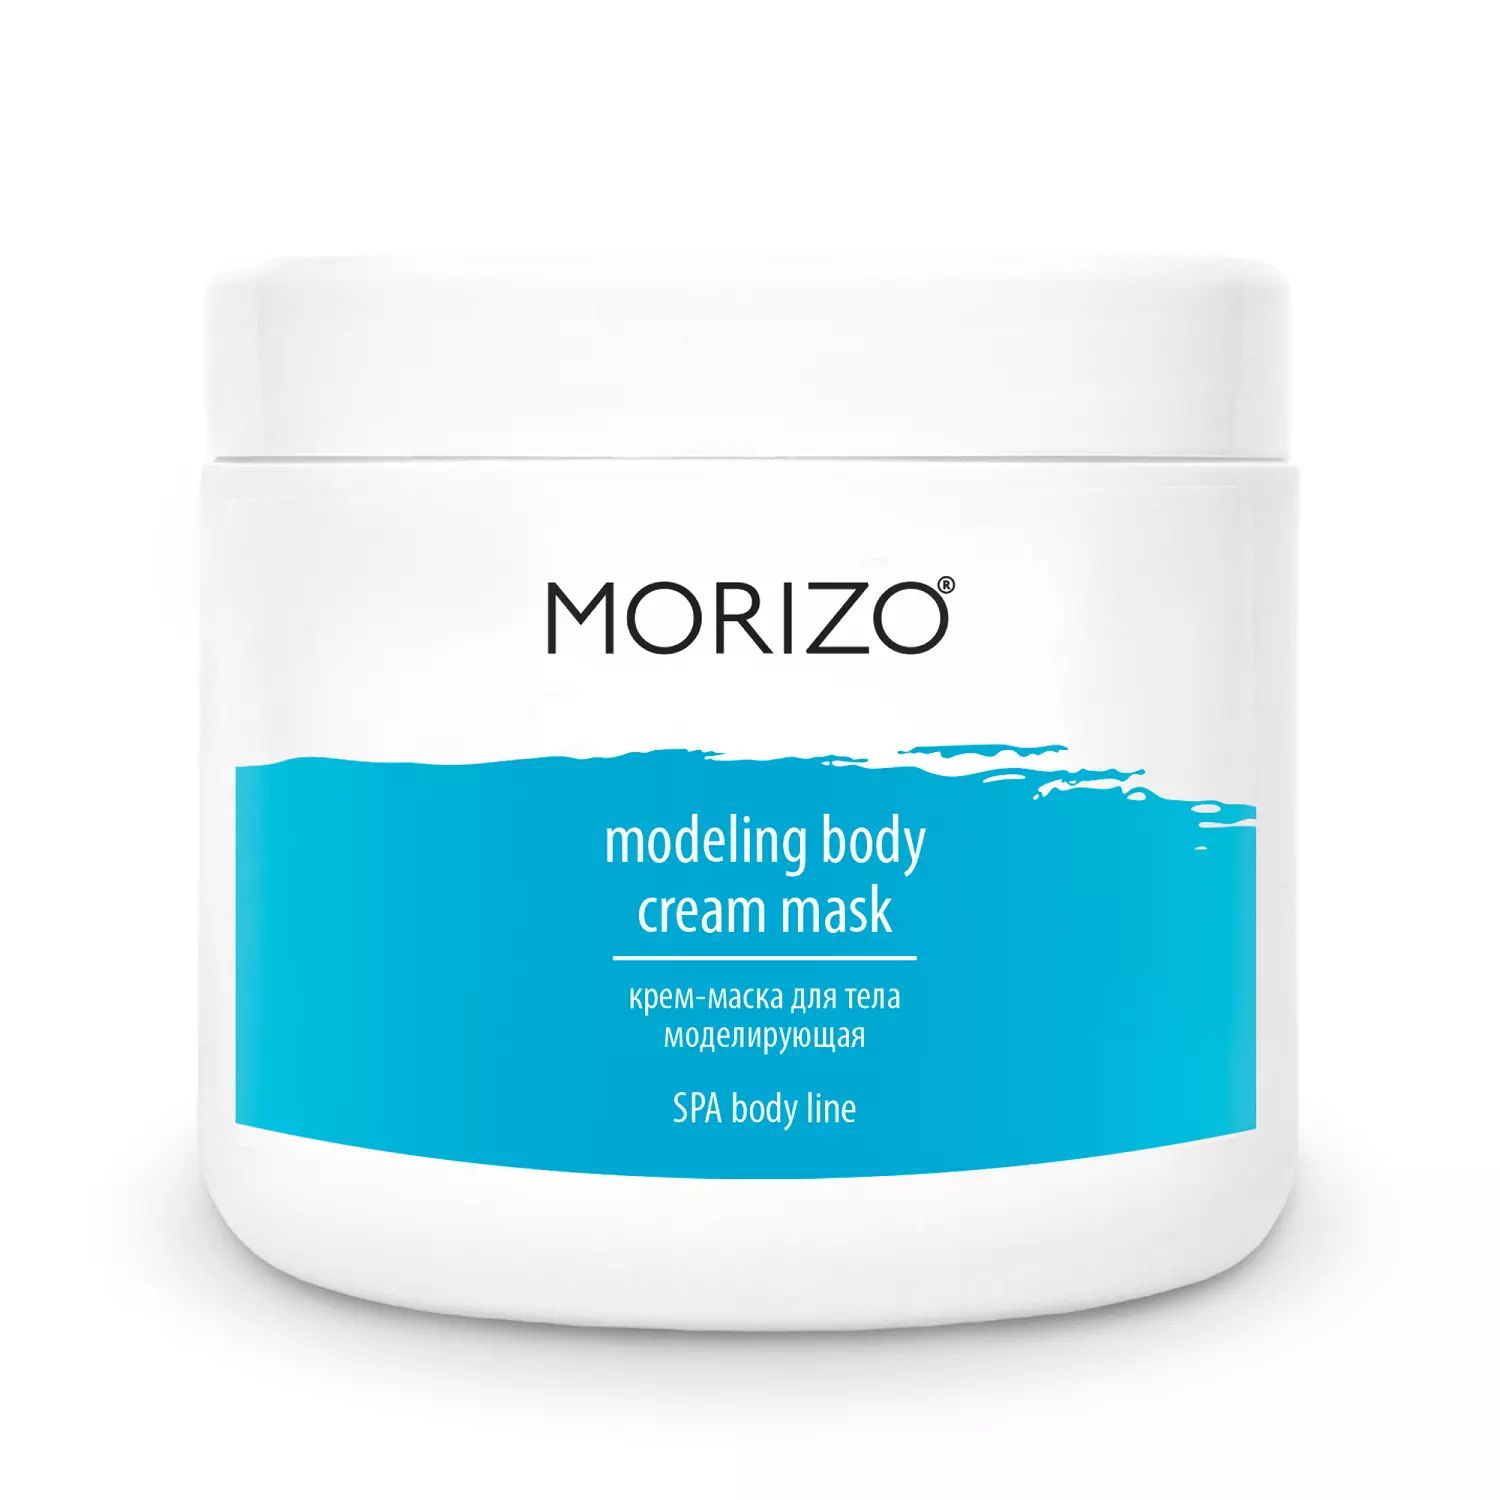 Крем-Маска MORIZO Крем-Маска Body Cream Mask для Тела Моделирующая, 500 мл duru туалетное крем мыло 1 1 белая глина